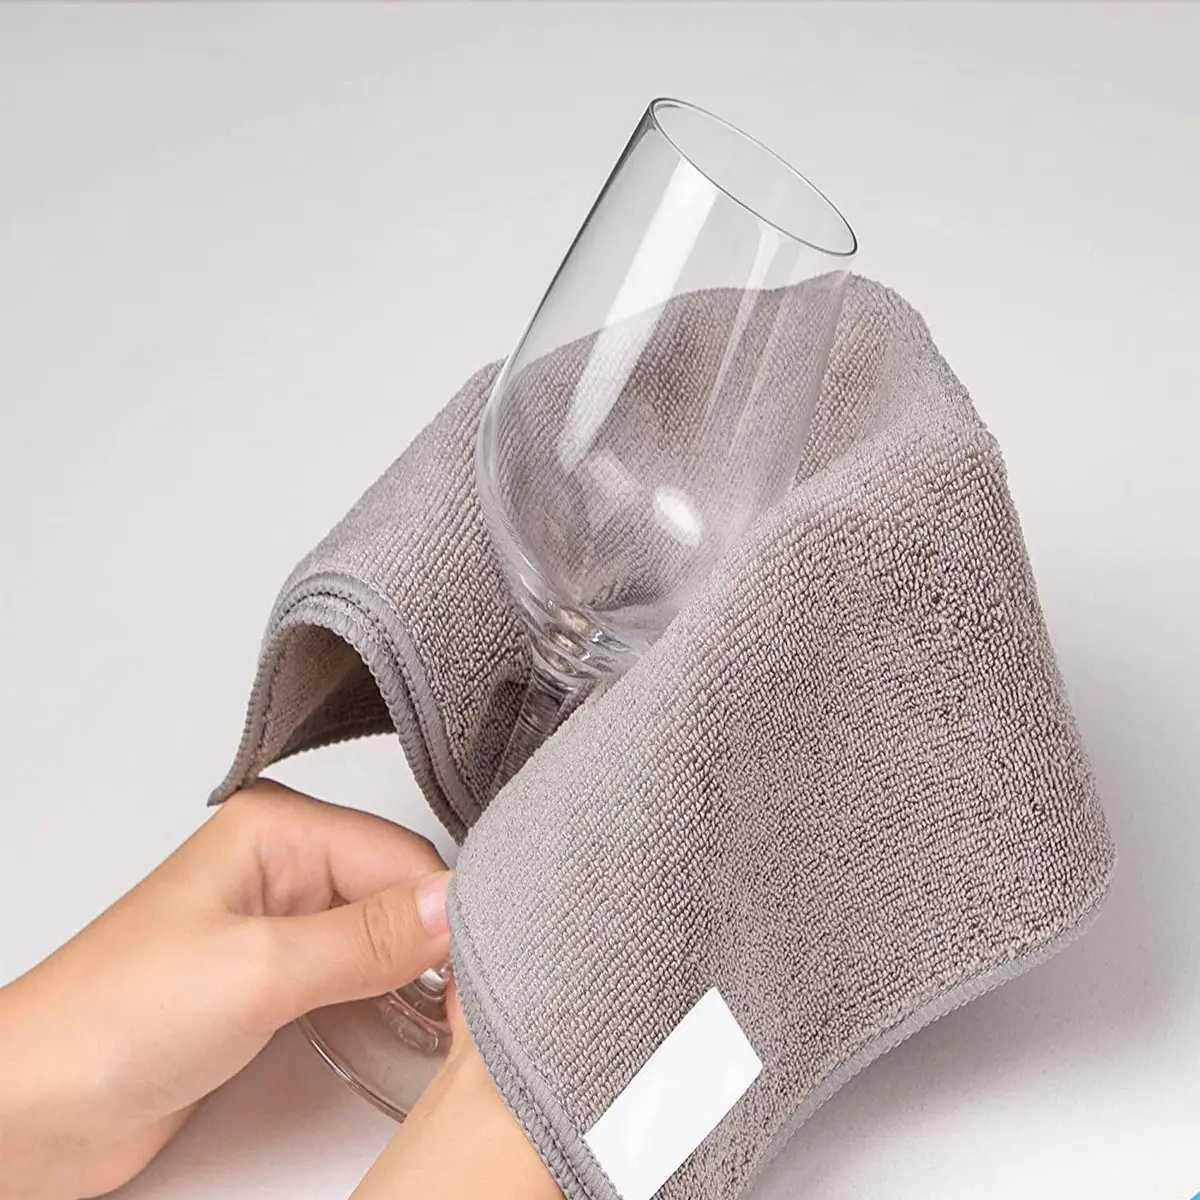 Séchage personnalisé 30x40 acheter serviette en microfibre voiture cuisine coton imprimé torchon en microfibre